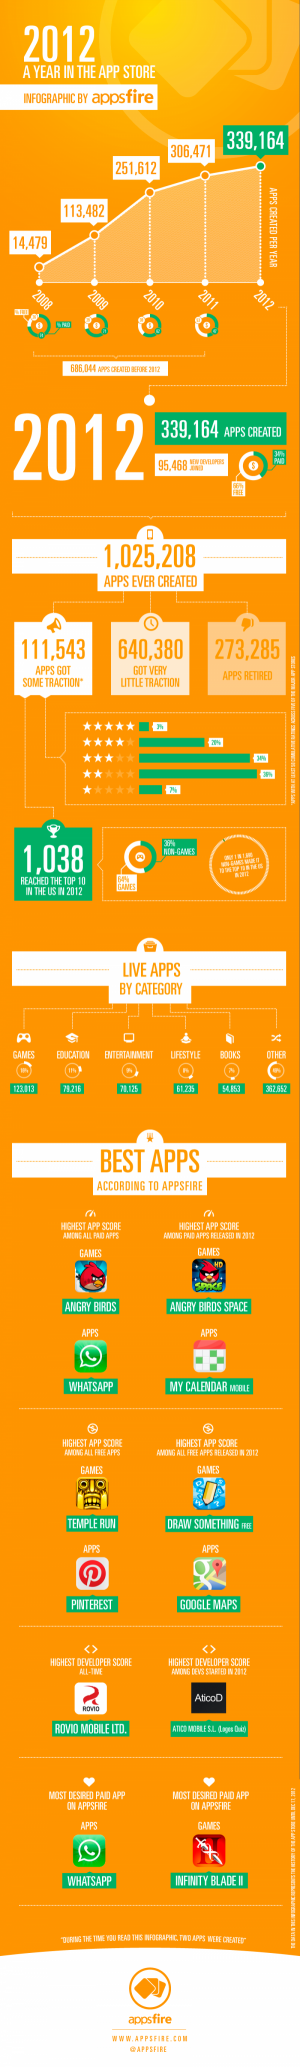 Los juegos y las aplicaciones gratuitas protagonistas en la App Store en 2012 